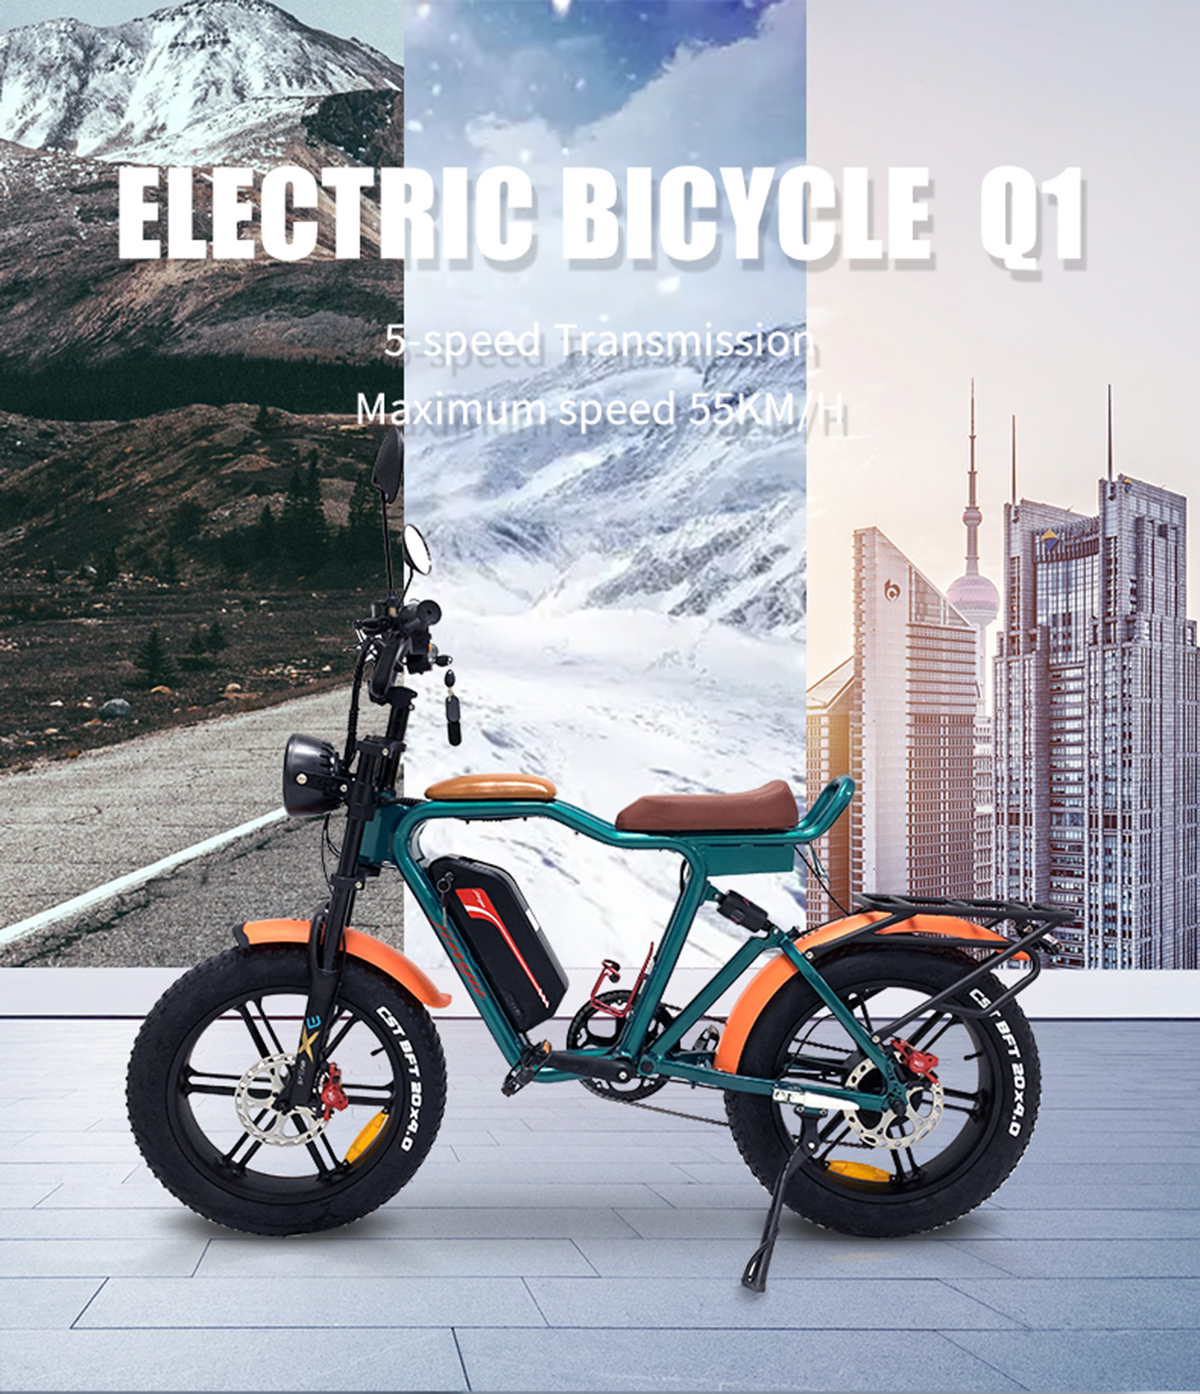 Bicicleta eléctrica Cyclemix Q1 1000W 48V 22Ah 55Kmh batería de litio externa Detalles de bicicleta eléctrica1